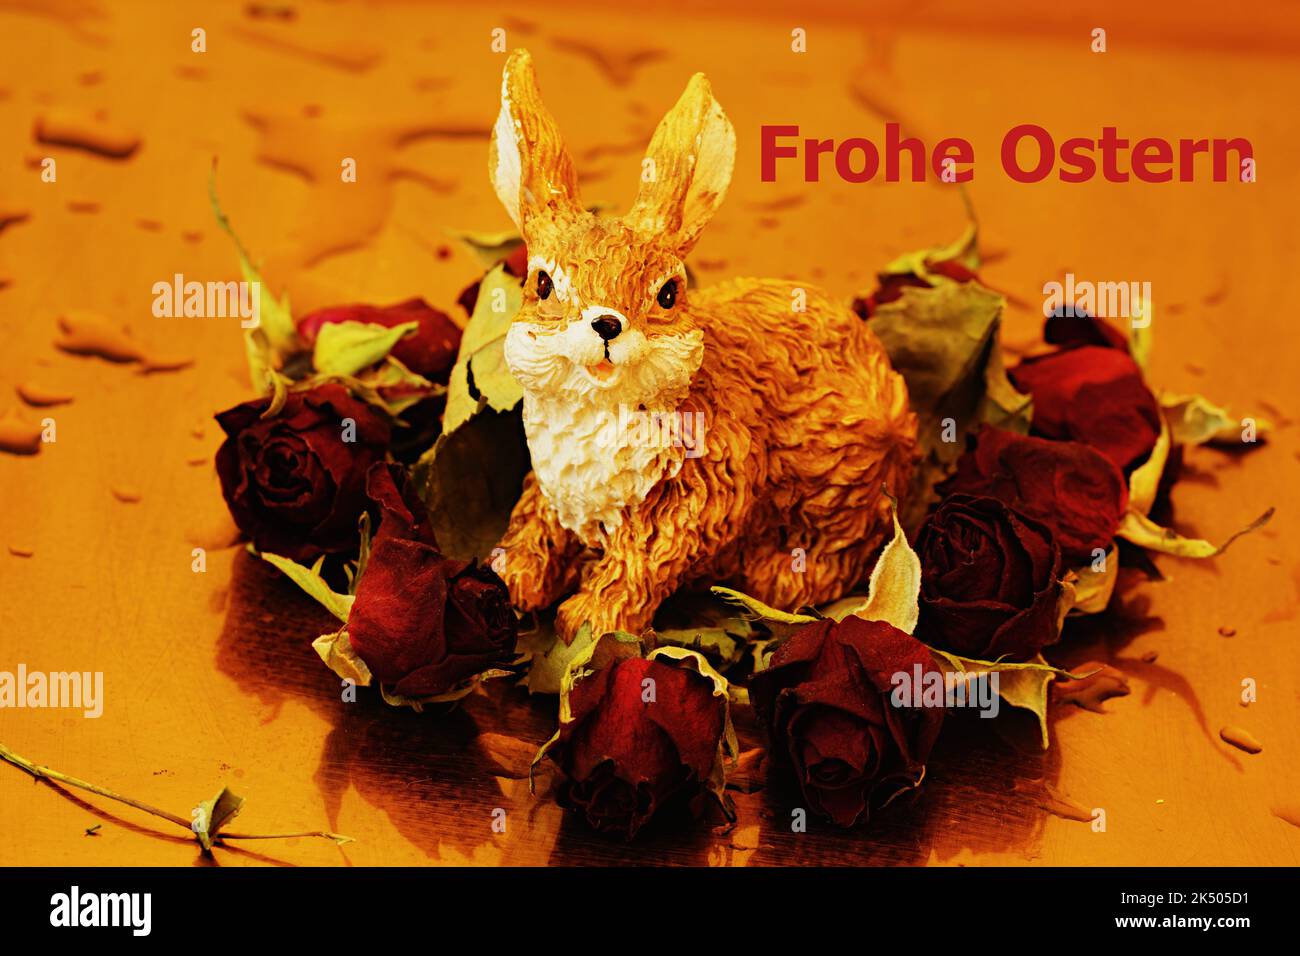 Frohe Ostern - Osterhase mit Minirosenblüten umrahmt Stock Photo